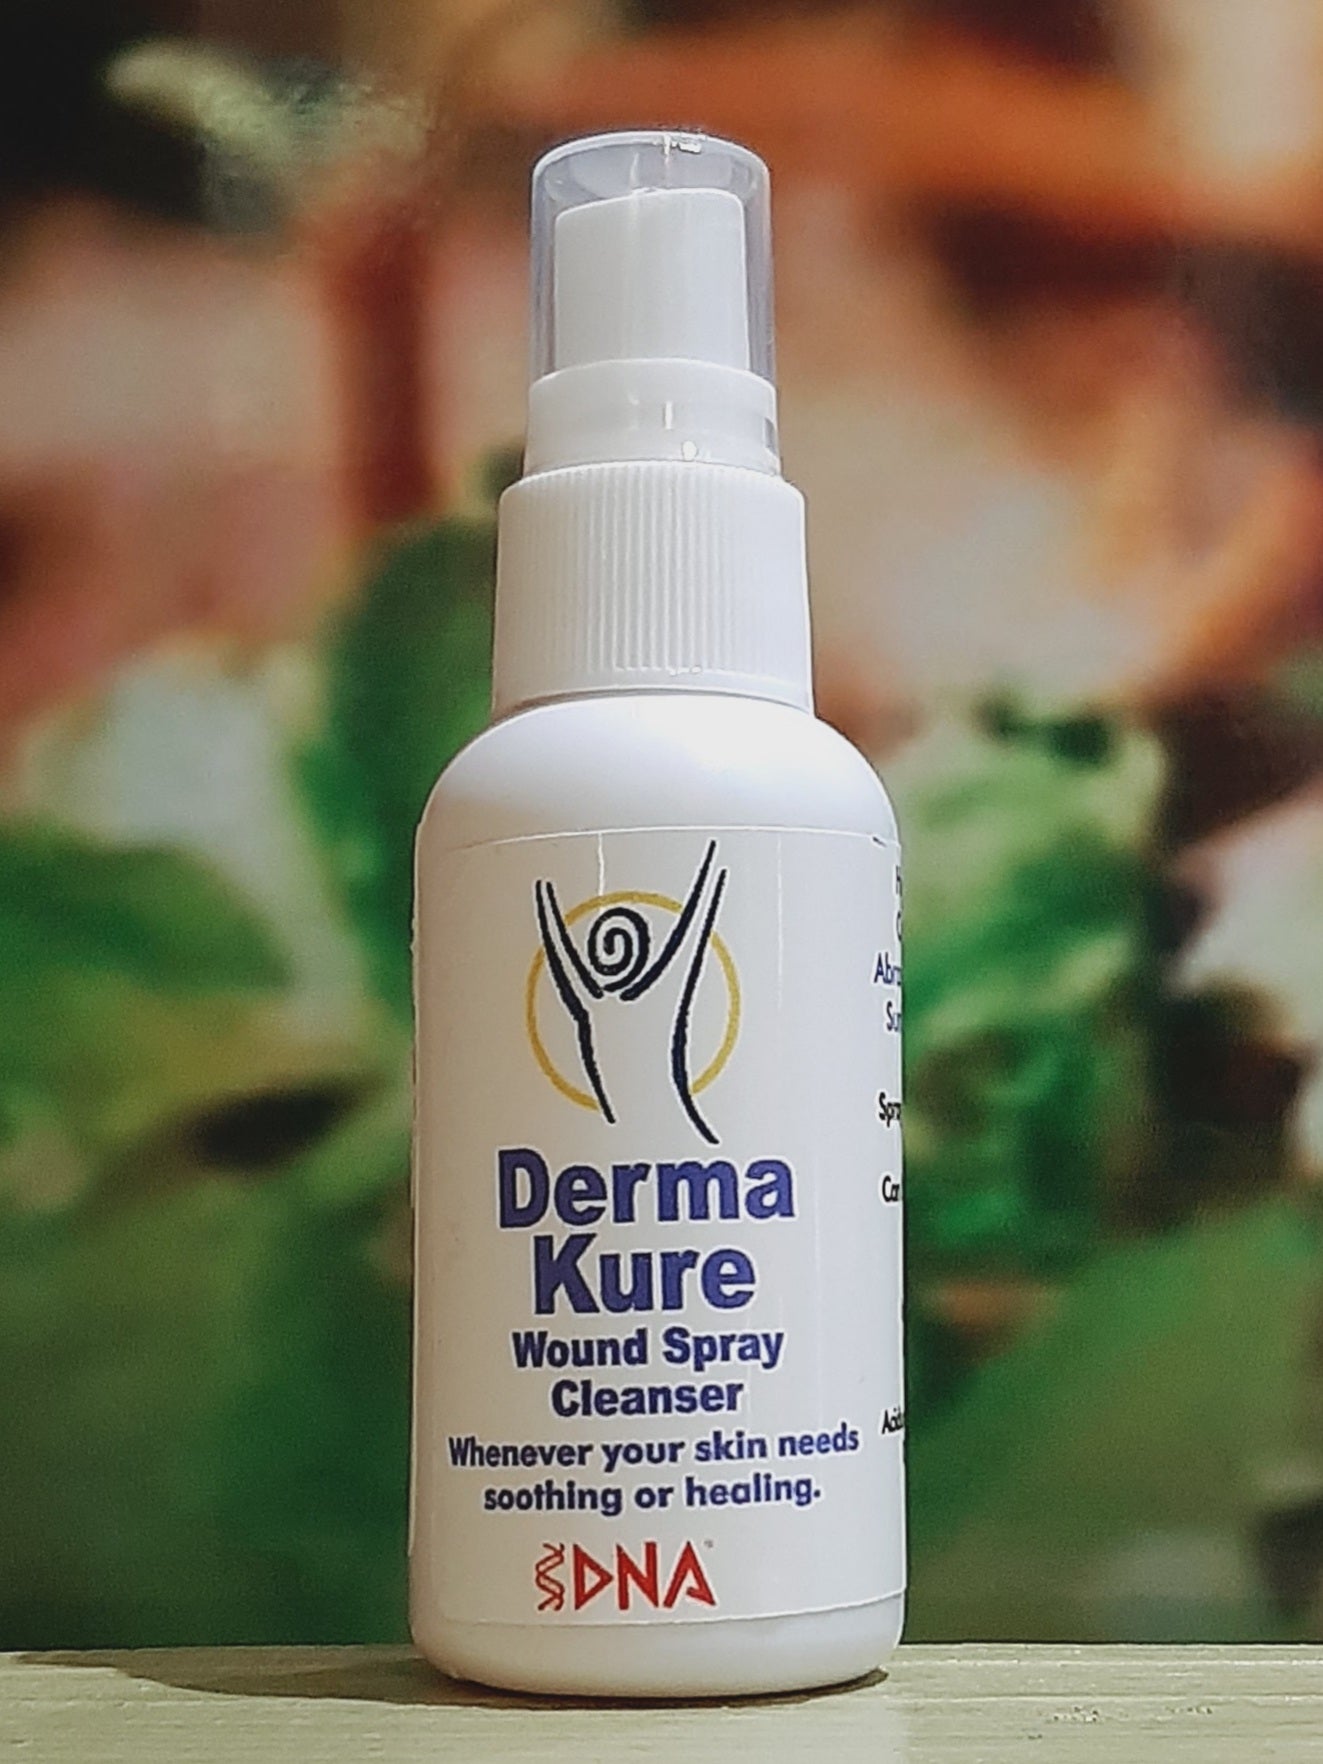 DNA Derma Kure Wound Spray 50 ml